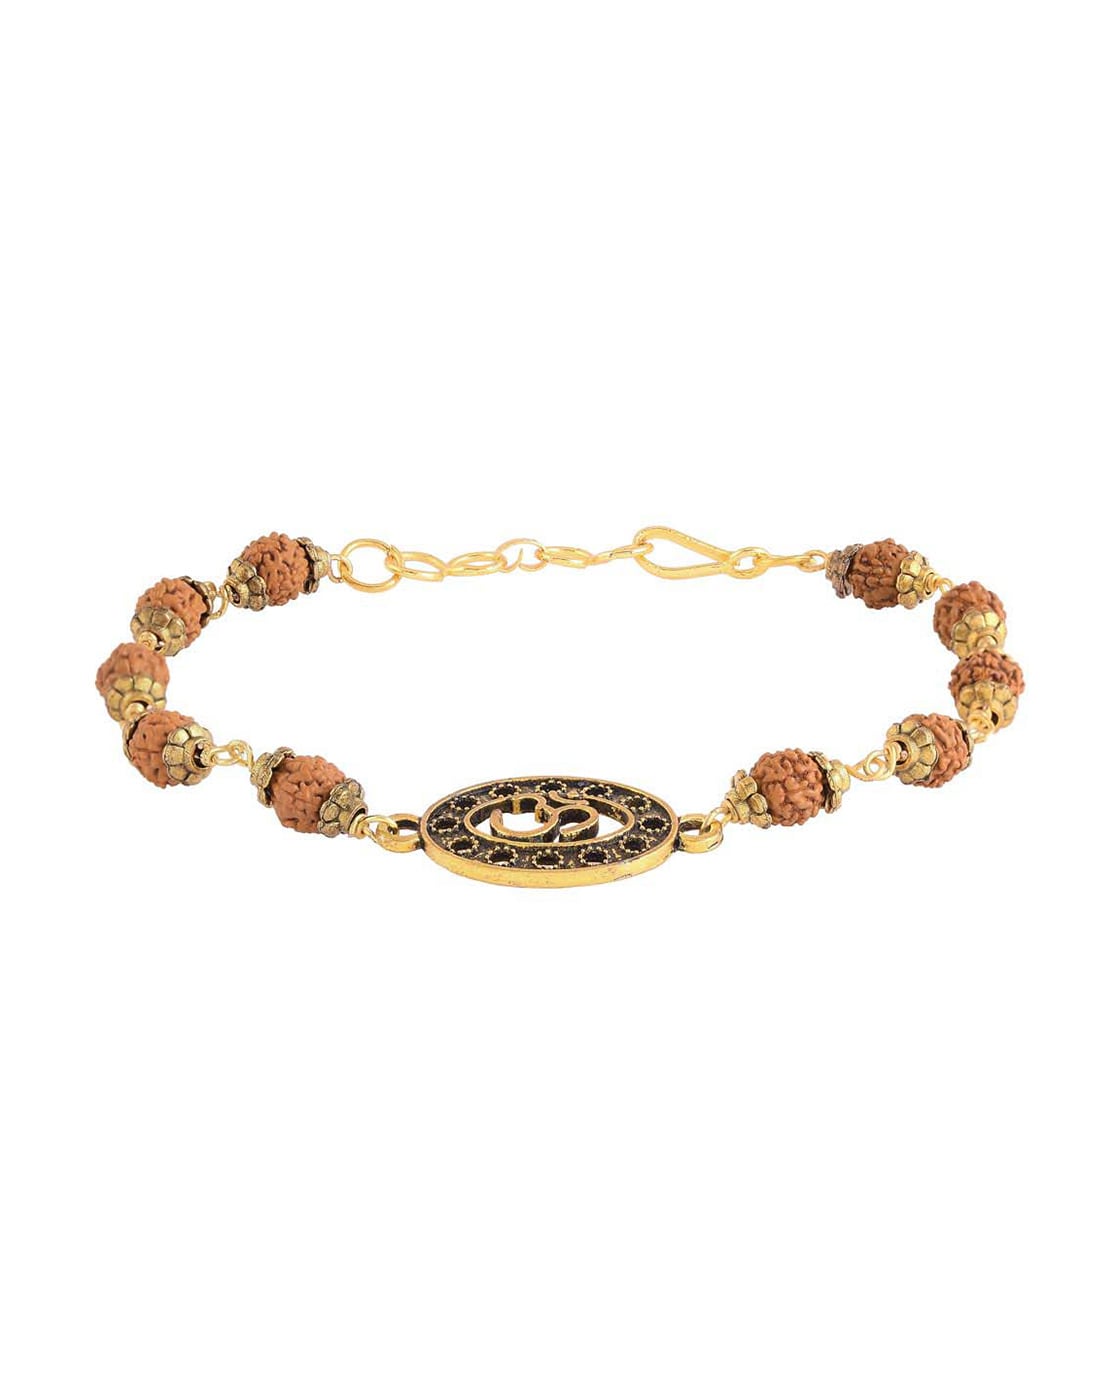 Divine Hindu Gold Plated Rudraksha Bracelet